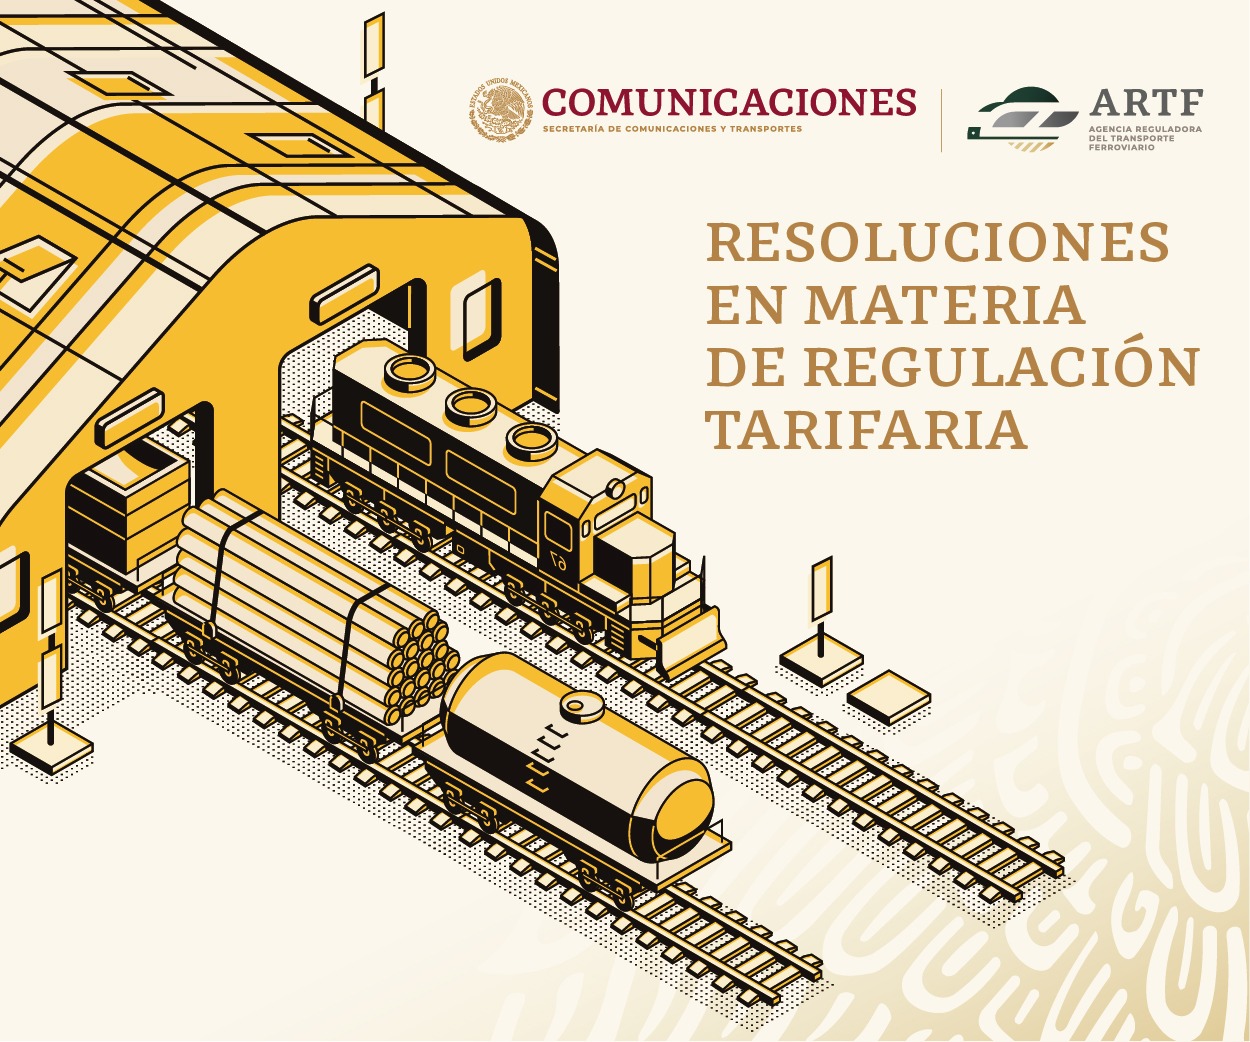 Las resoluciones de la ARTF establecen tarifas máximas para la prestación del servicio ferroviario respecto de 3 diferentes concesionarios en 20 pares origen-destino de 4 productos